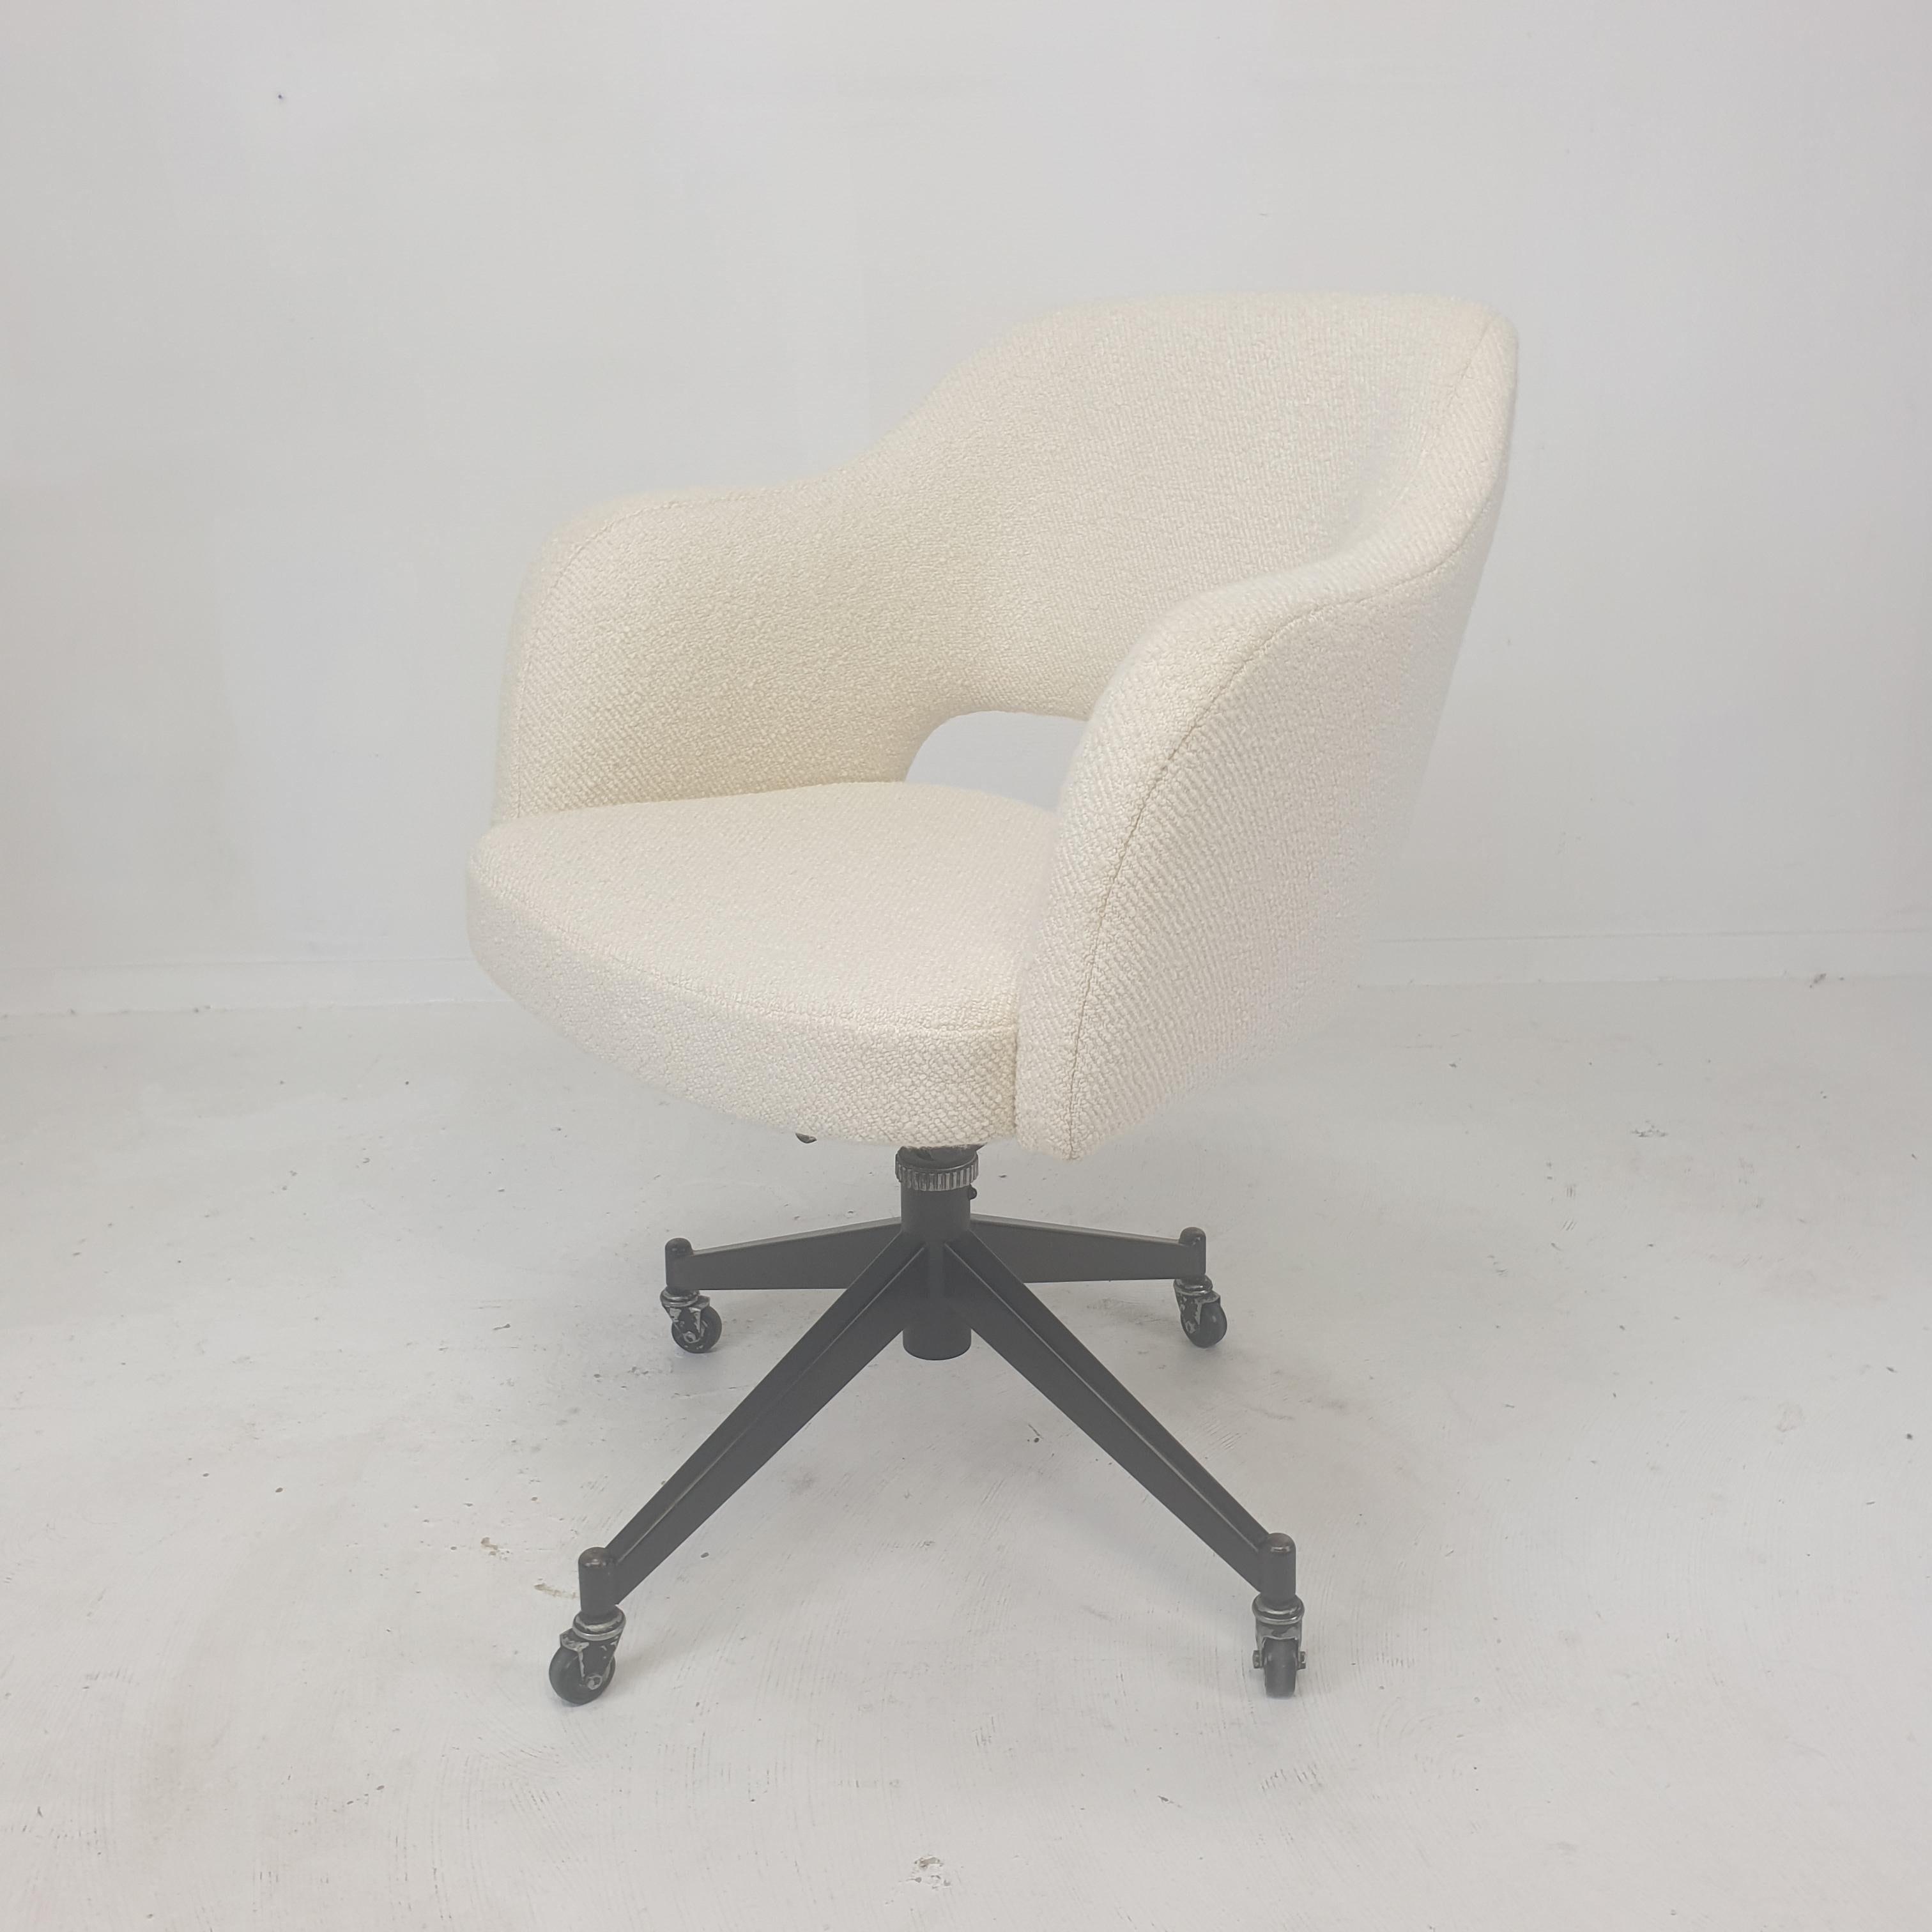 Magnifique et confortable fauteuil pivotant ou chaise de bureau italien, années 1960.

La chaise est retapissée avec un nouveau tissu et une nouvelle mousse, elle est en parfait état.
Le tissu de haute qualité Dedar Italy est très doux et